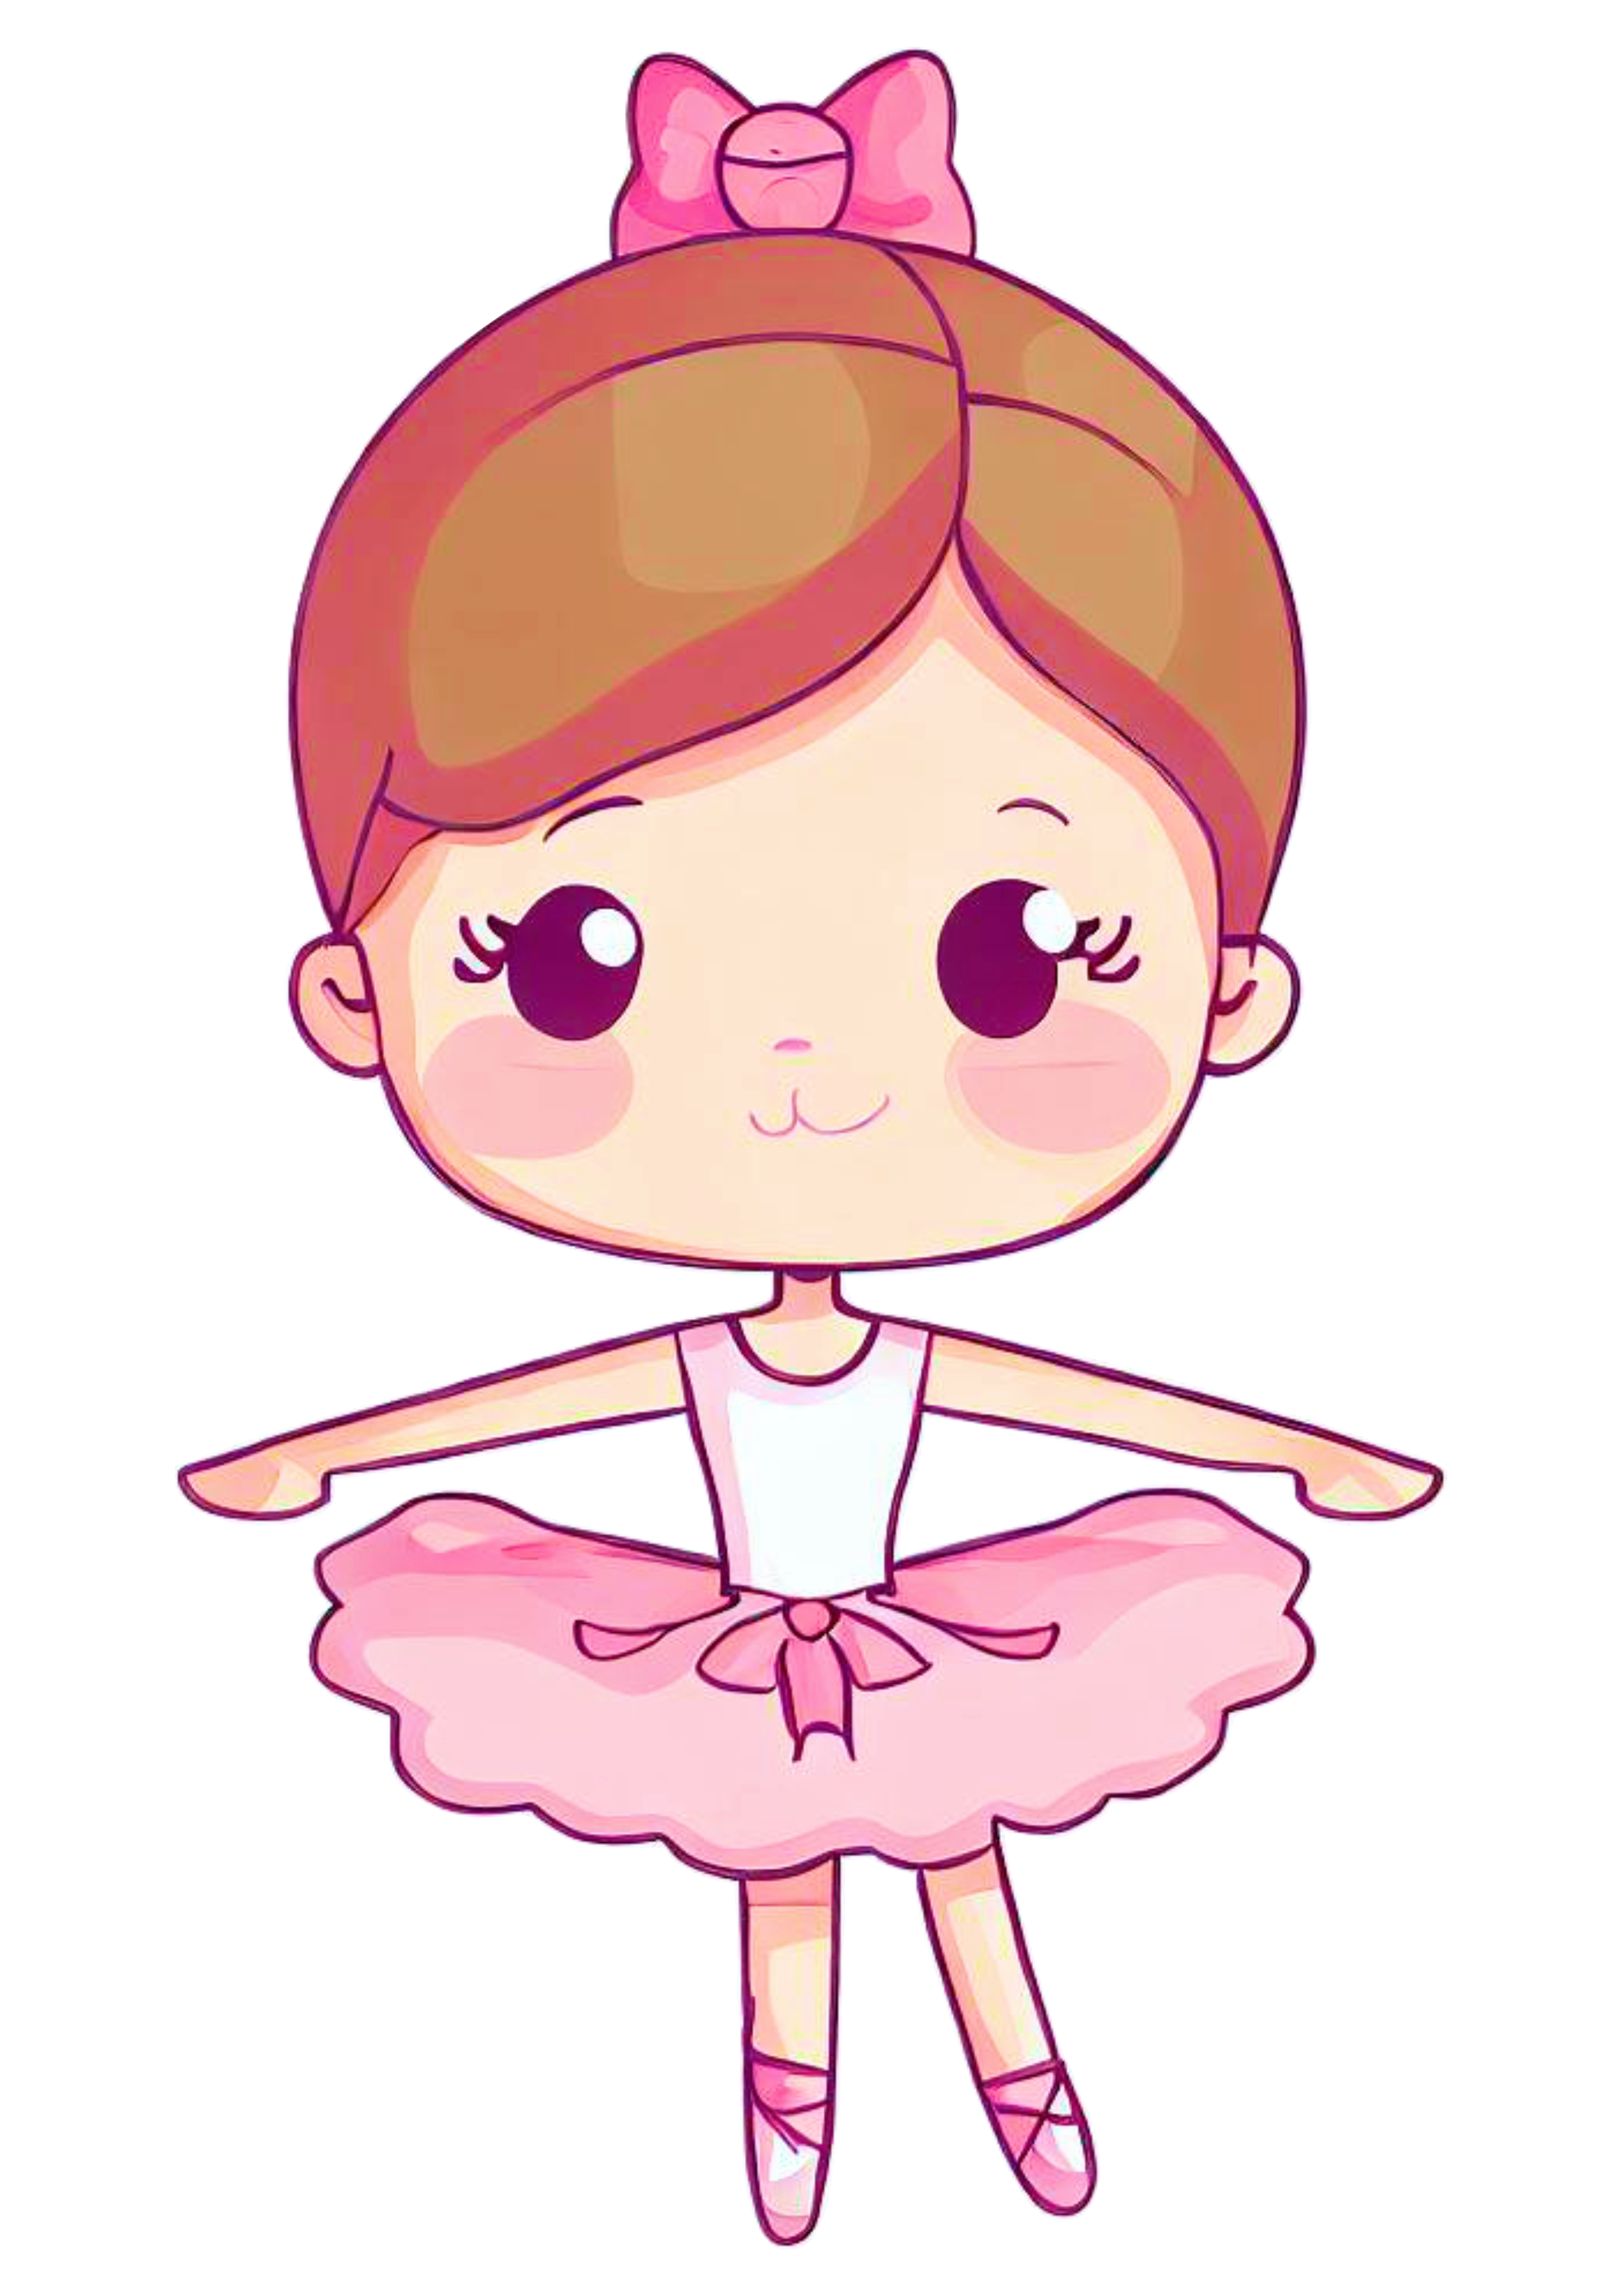 Bailarina bonequinha ilustração passos de balé vestido cute desenho com traços simples imagem sem fundo lacinho design png